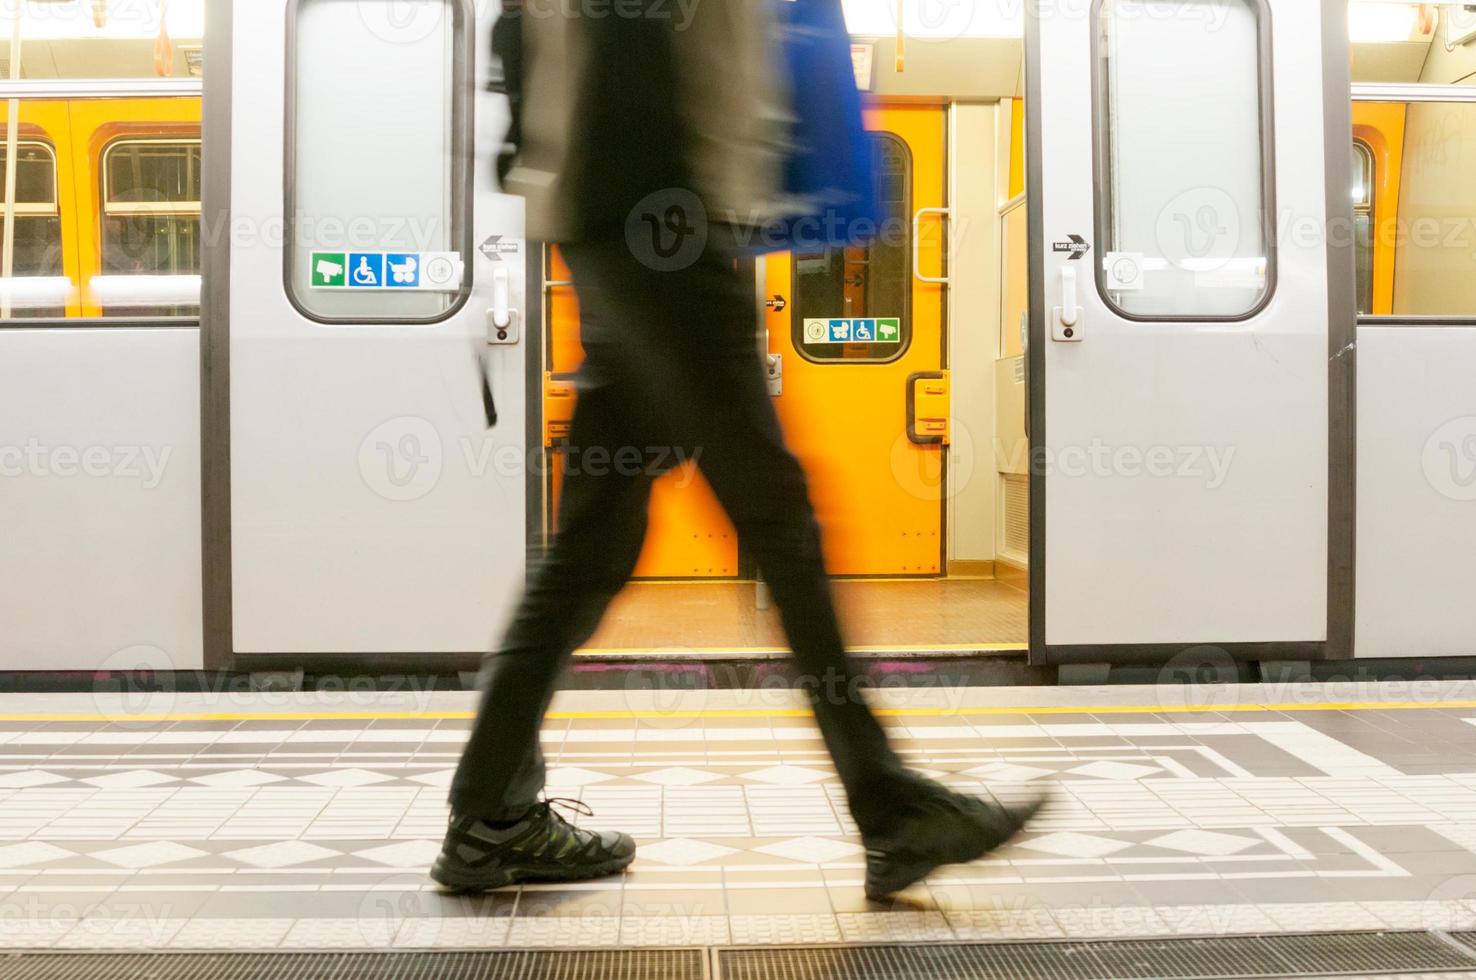 metrô em viena, áustria foto